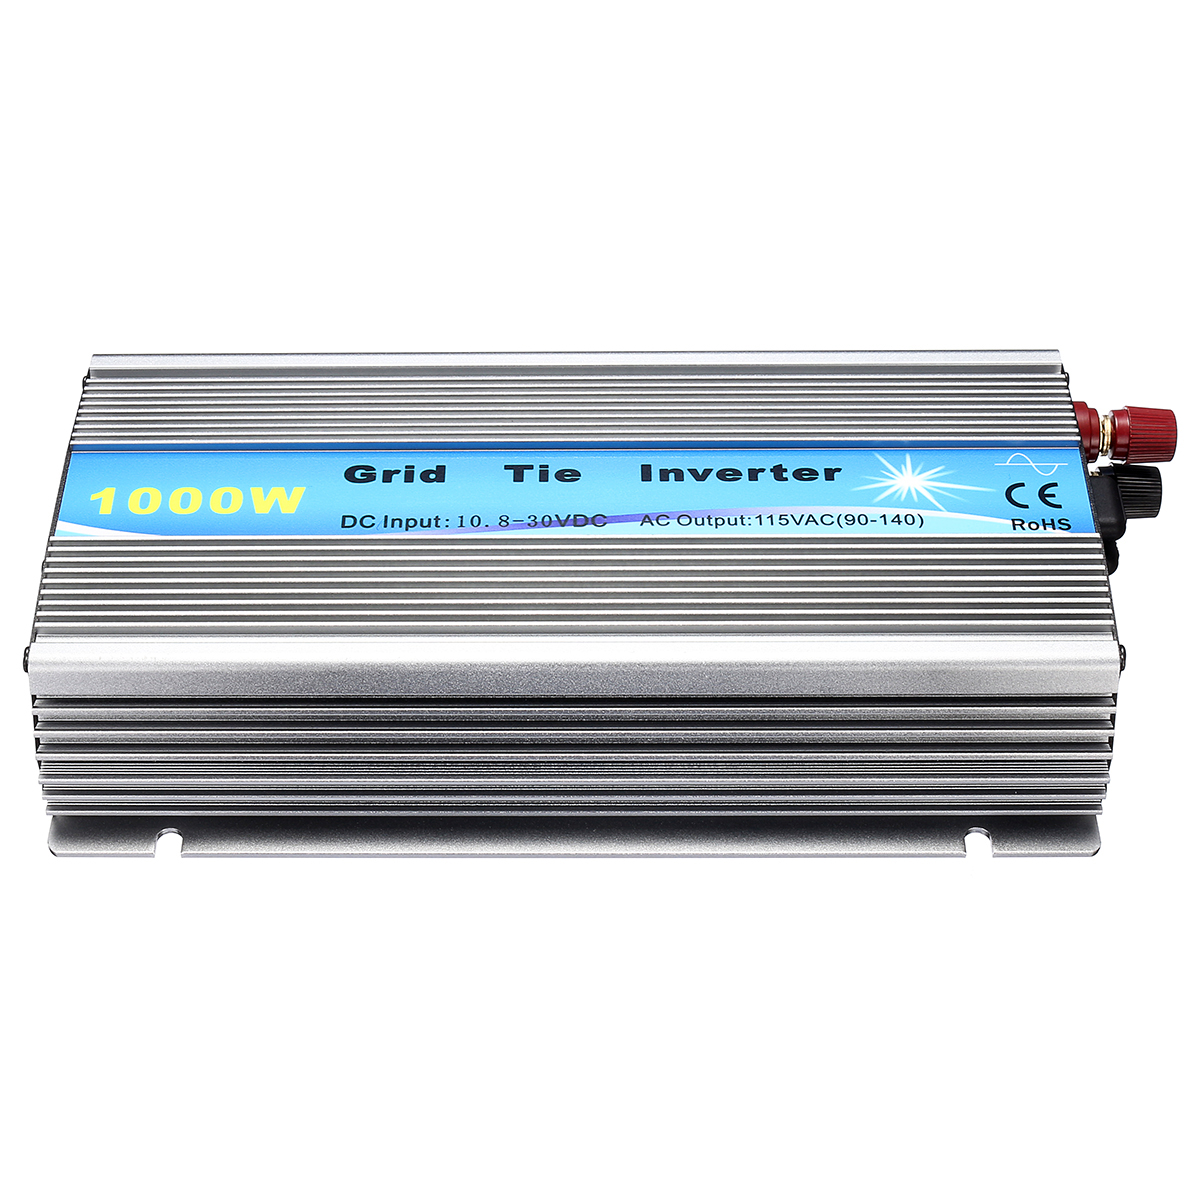 

1000W Grid Tie Inverter 115V/230V MPPT Pure Sine Wave Inverter 50Hz/60Hz